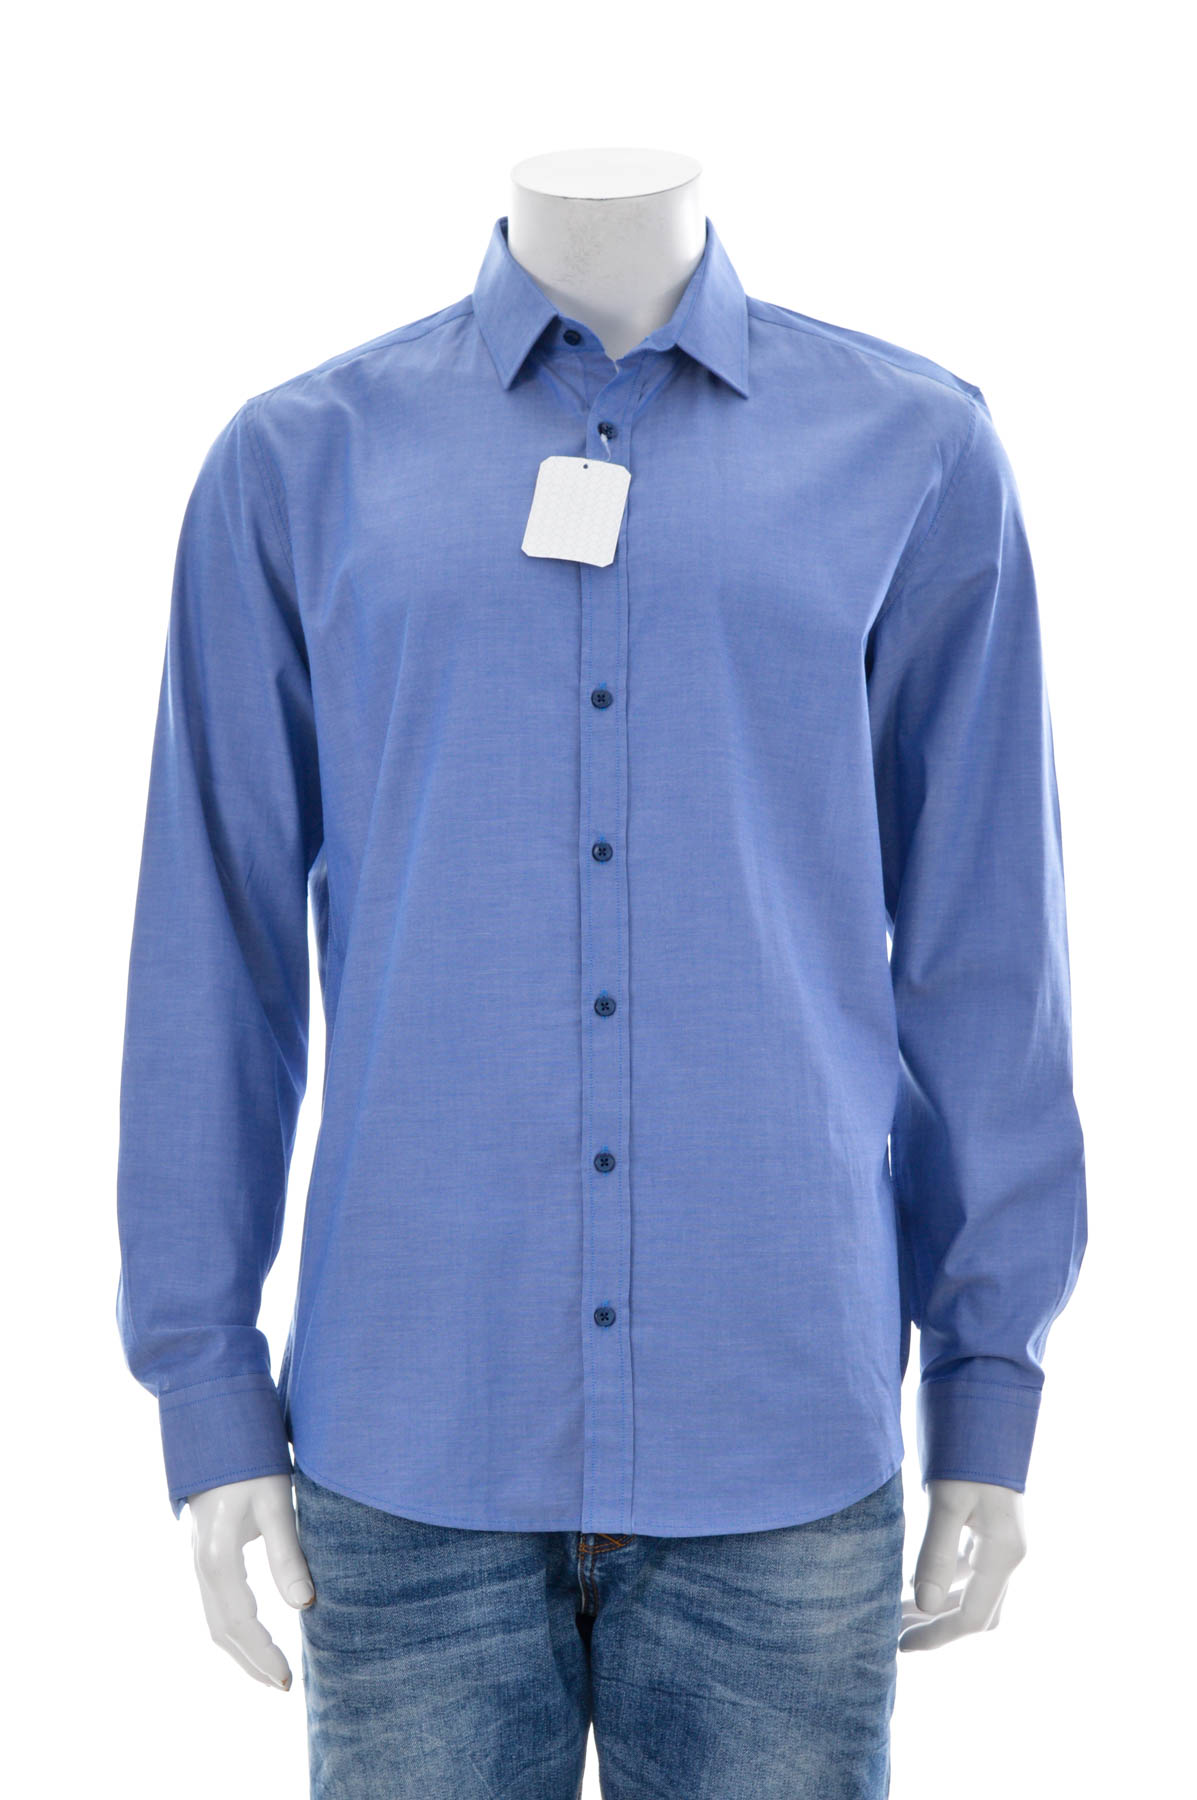 Ανδρικό πουκάμισο - KEYSTONE APPAREL - 0